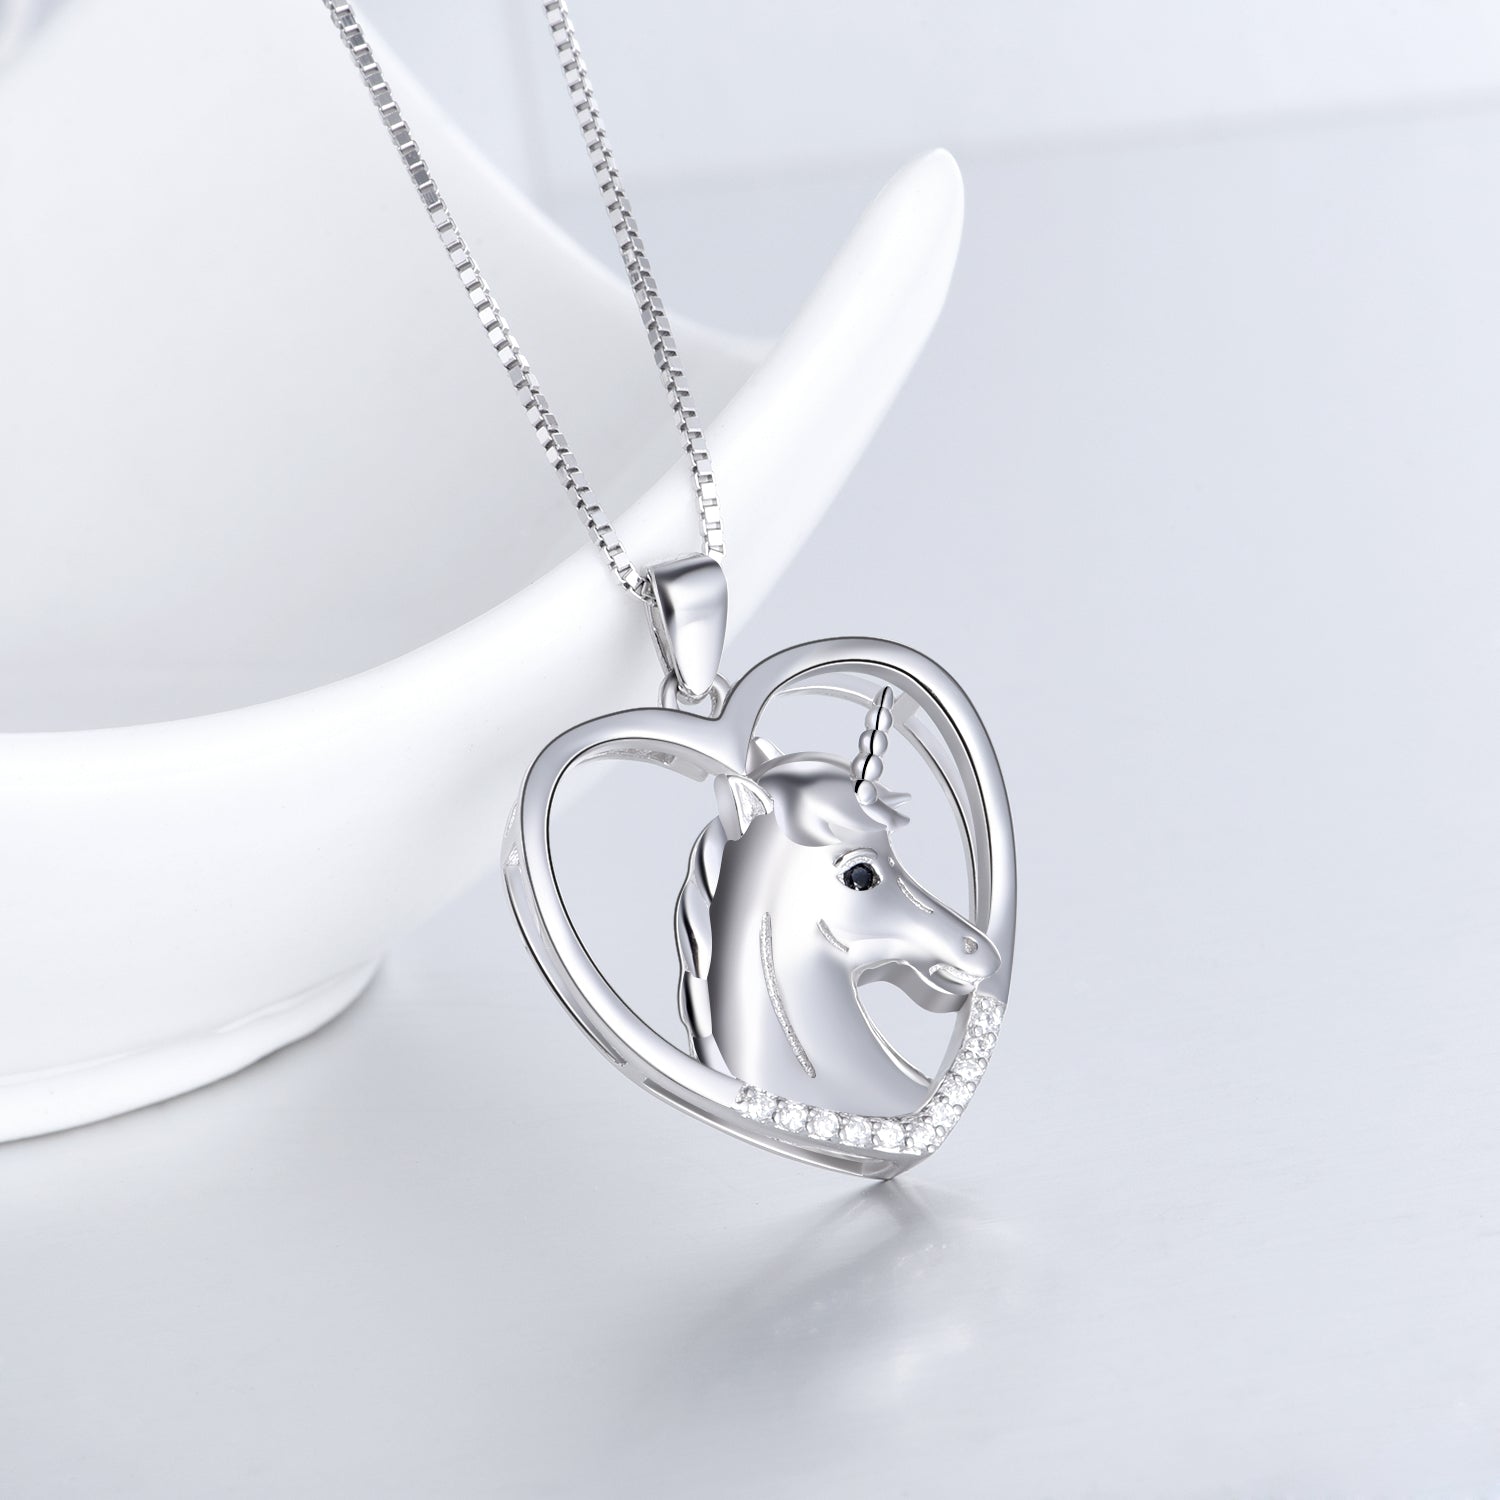 Heart Shaped Unicorn Necklace Unique Chain Necklace